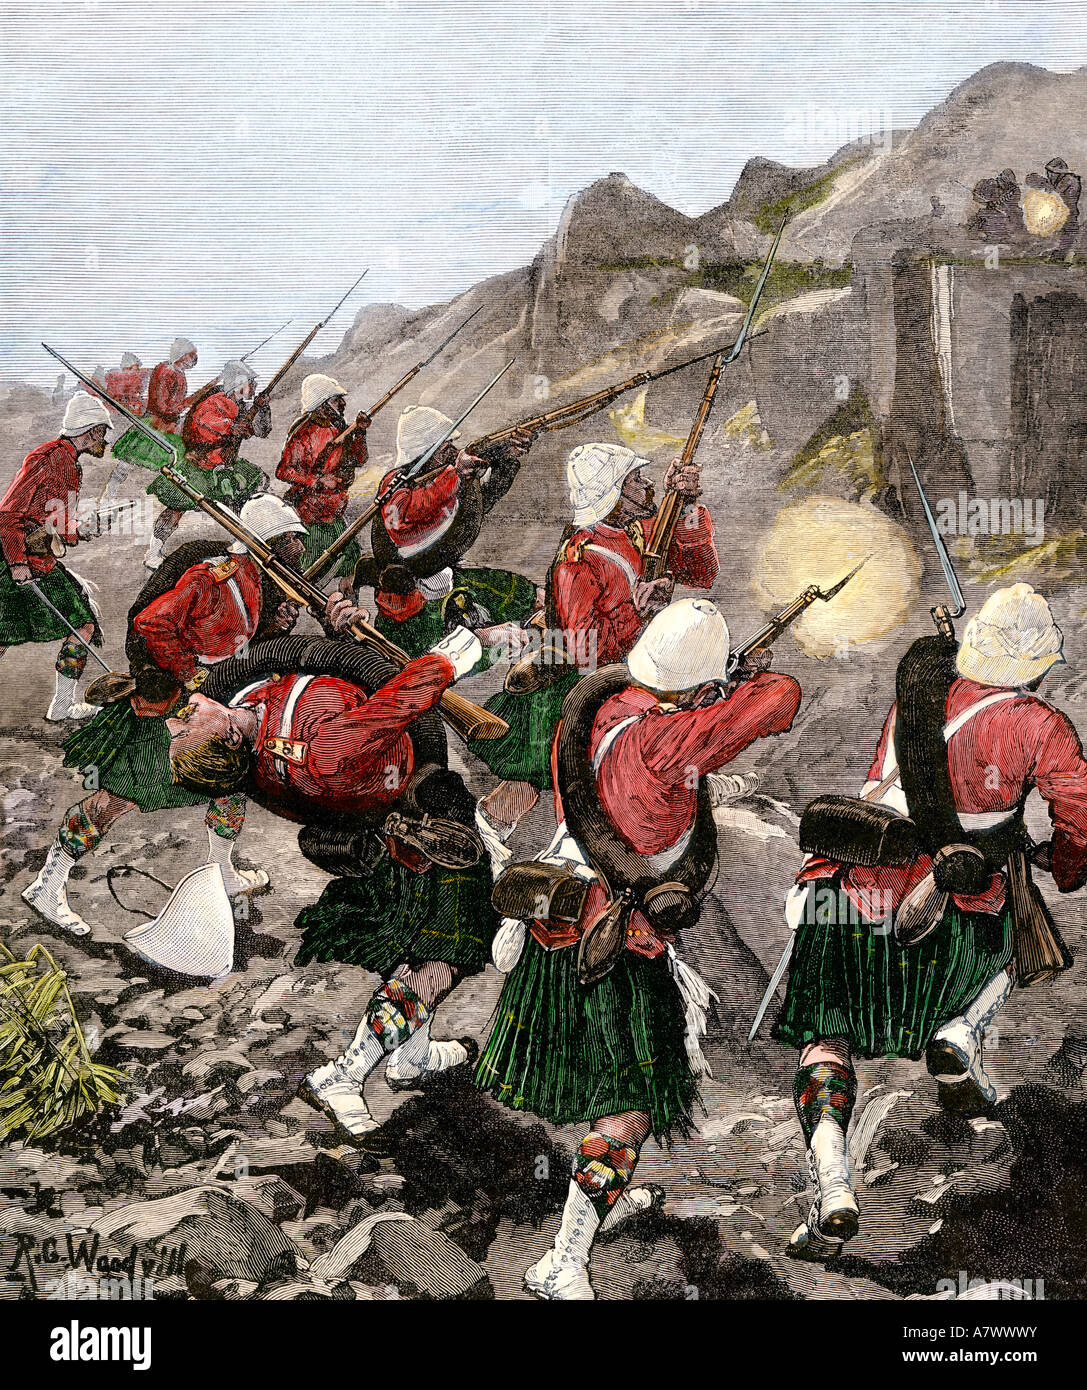 Britische 92nd Highlanders Scharmützel mit holländischen Buren in Transvaal Krieg Südafrika 1881. Hand - farbige Holzschnitt Stockfoto